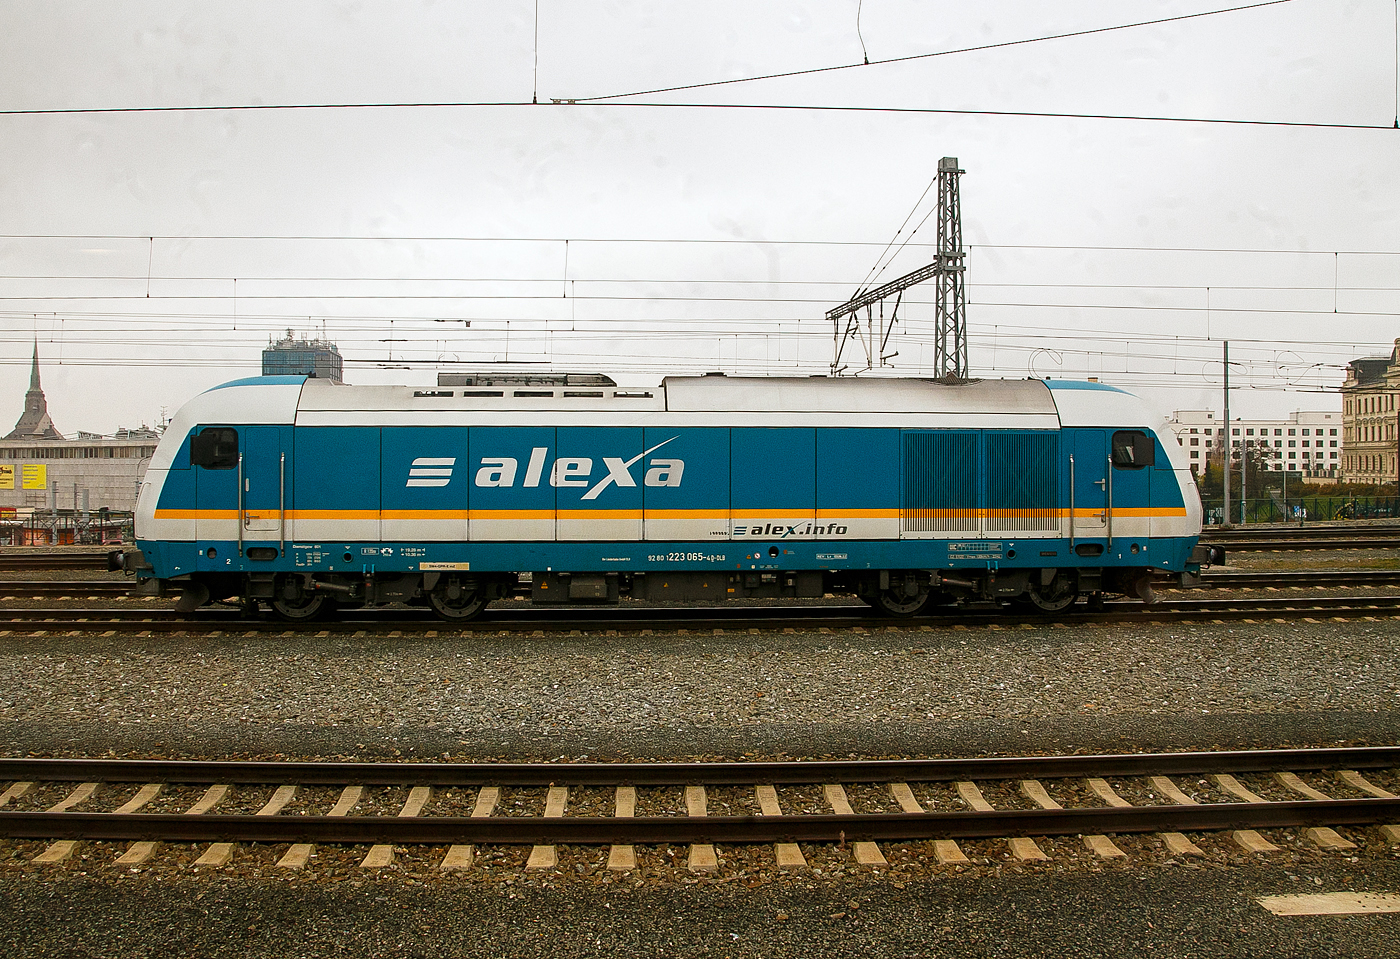 Die alexa 223 065 (92 80 1223 065-4 D-DLB) wurde nun (am 22.11.2022) vom EX 357 (alek RE 25) im Hauptbahnhof Pilsen (Plzeň hlavní nádraží) gelöst und rangiert nun um den Gegenzug von Prag nach München zu übernehmen. Für die Weiterfahrt nach Prag (Praha) wurde nun an EX 357 eine E-Lok der BR 362 der ČD (České dráhy / Tschechische Bahnen) gekuppelt.

Die Siemens ER 20 wurde 2007 von Siemens in München unter der Fabriknummer 21453 gebaut. Sie hat die Zulassung für Deutschland, Österreich  und Tschechien (CZ für Vmax = 100km/h).
